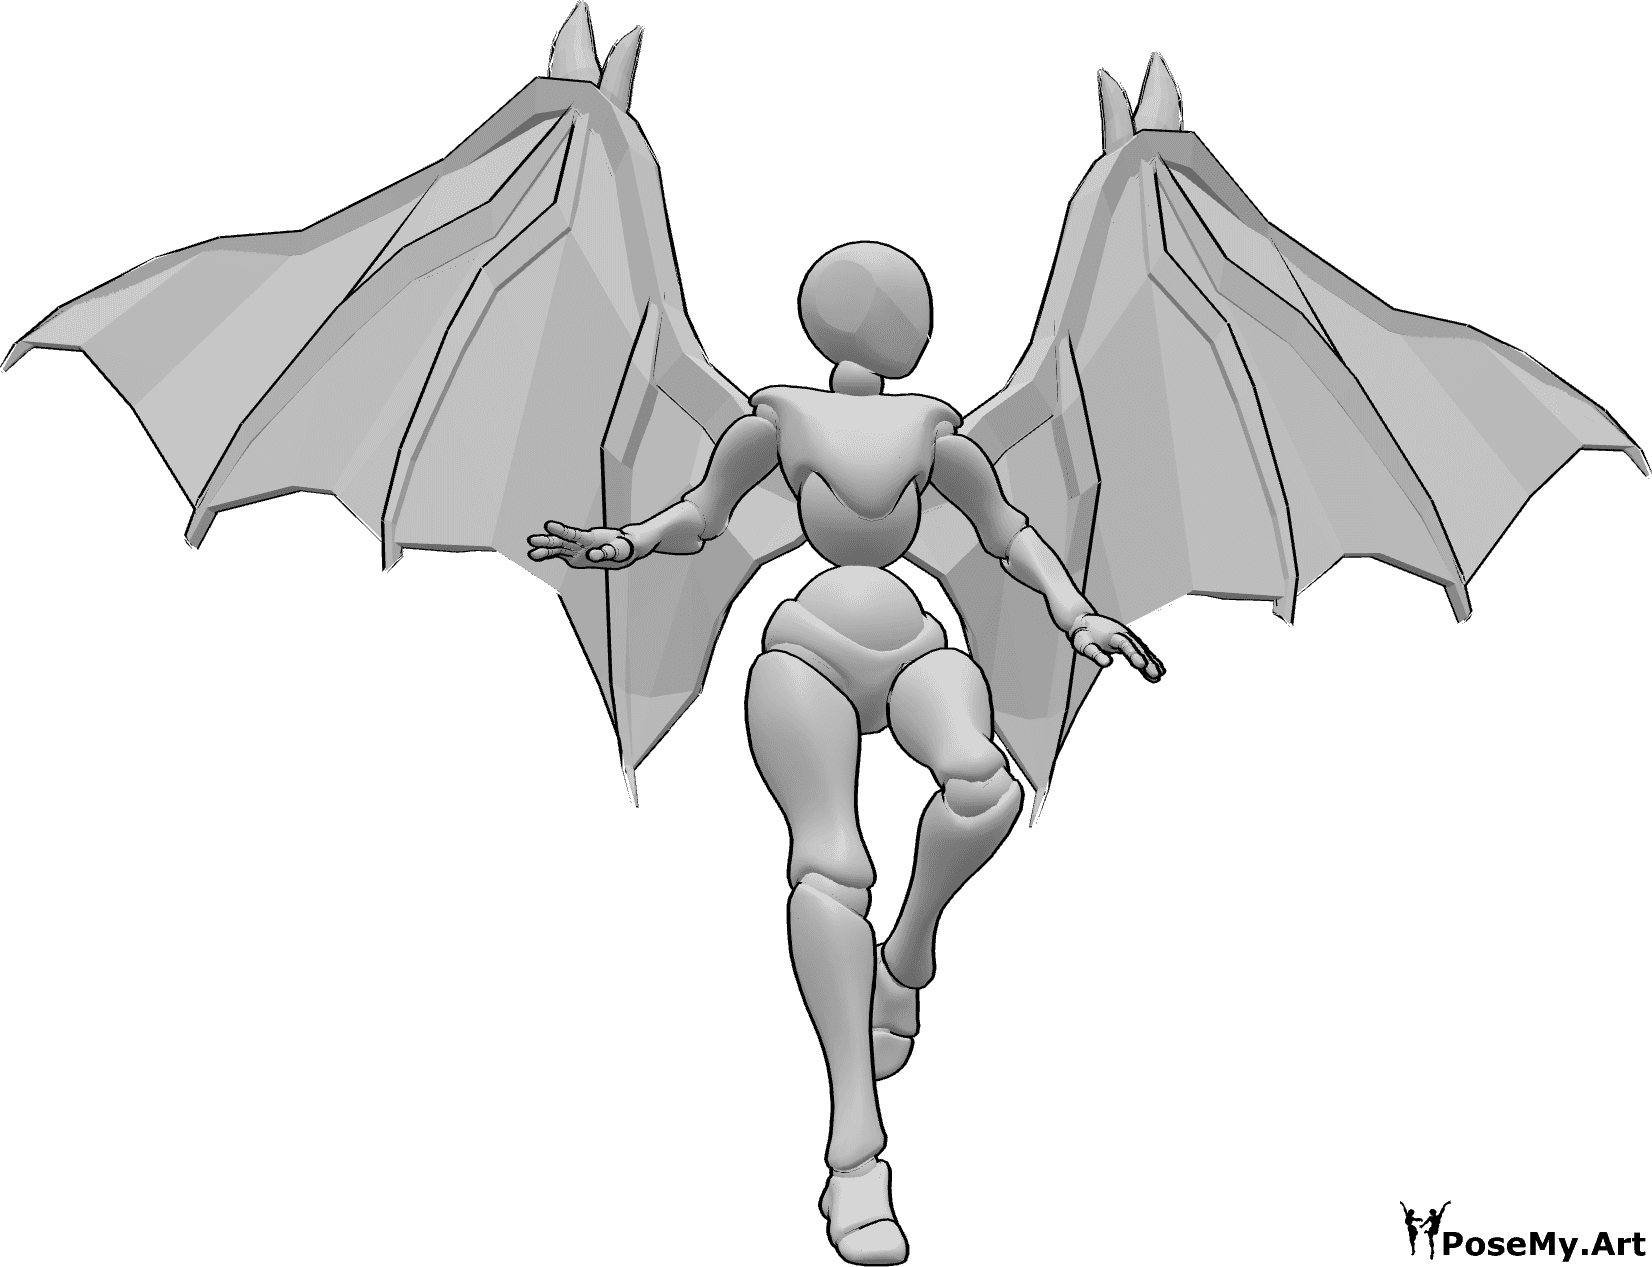 Referencia de poses- Postura de vuelo con alas de diablo - Mujer con alas de diablo está volando, mirando a la izquierda, alas humanas dibujo de referencia